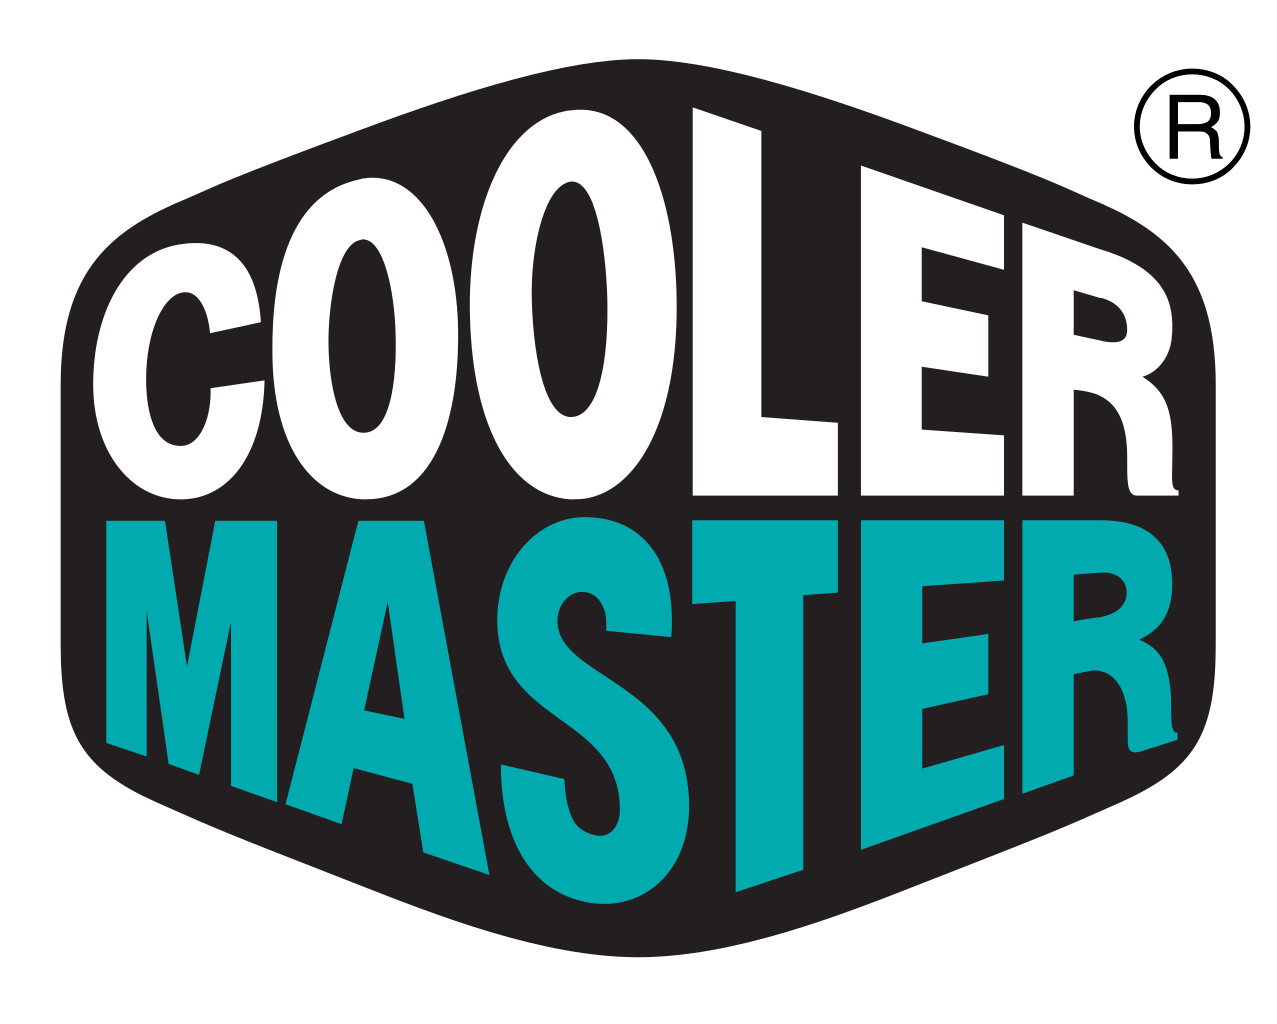 Cooler_Master